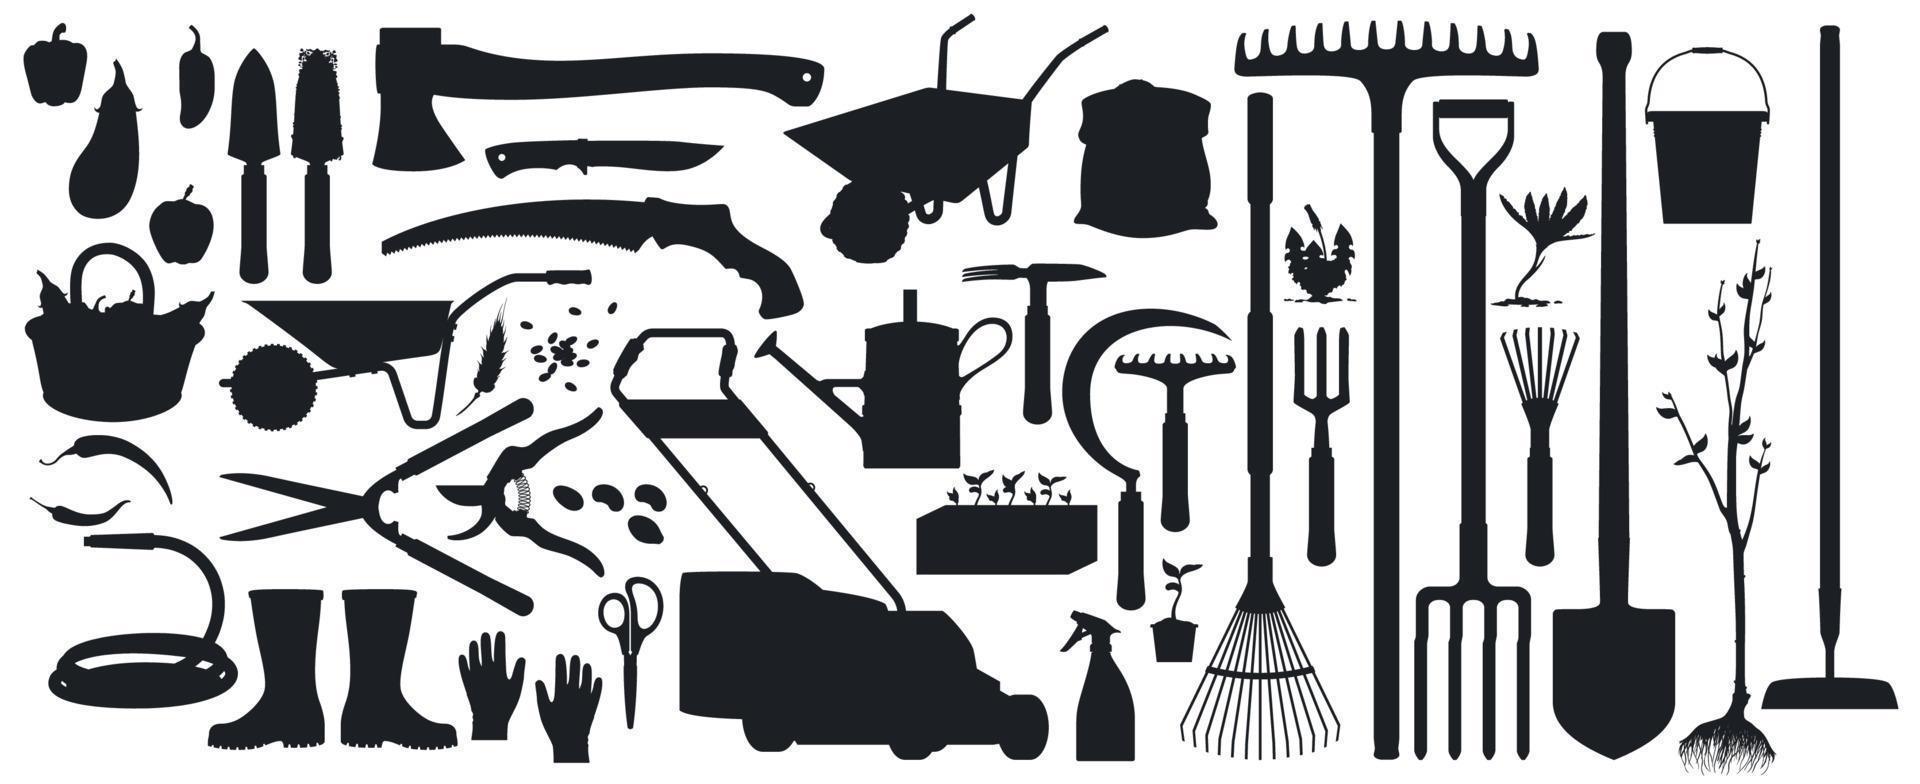 jardinagem, ferramentas agrícolas, silhuetas de instrumentos vetor